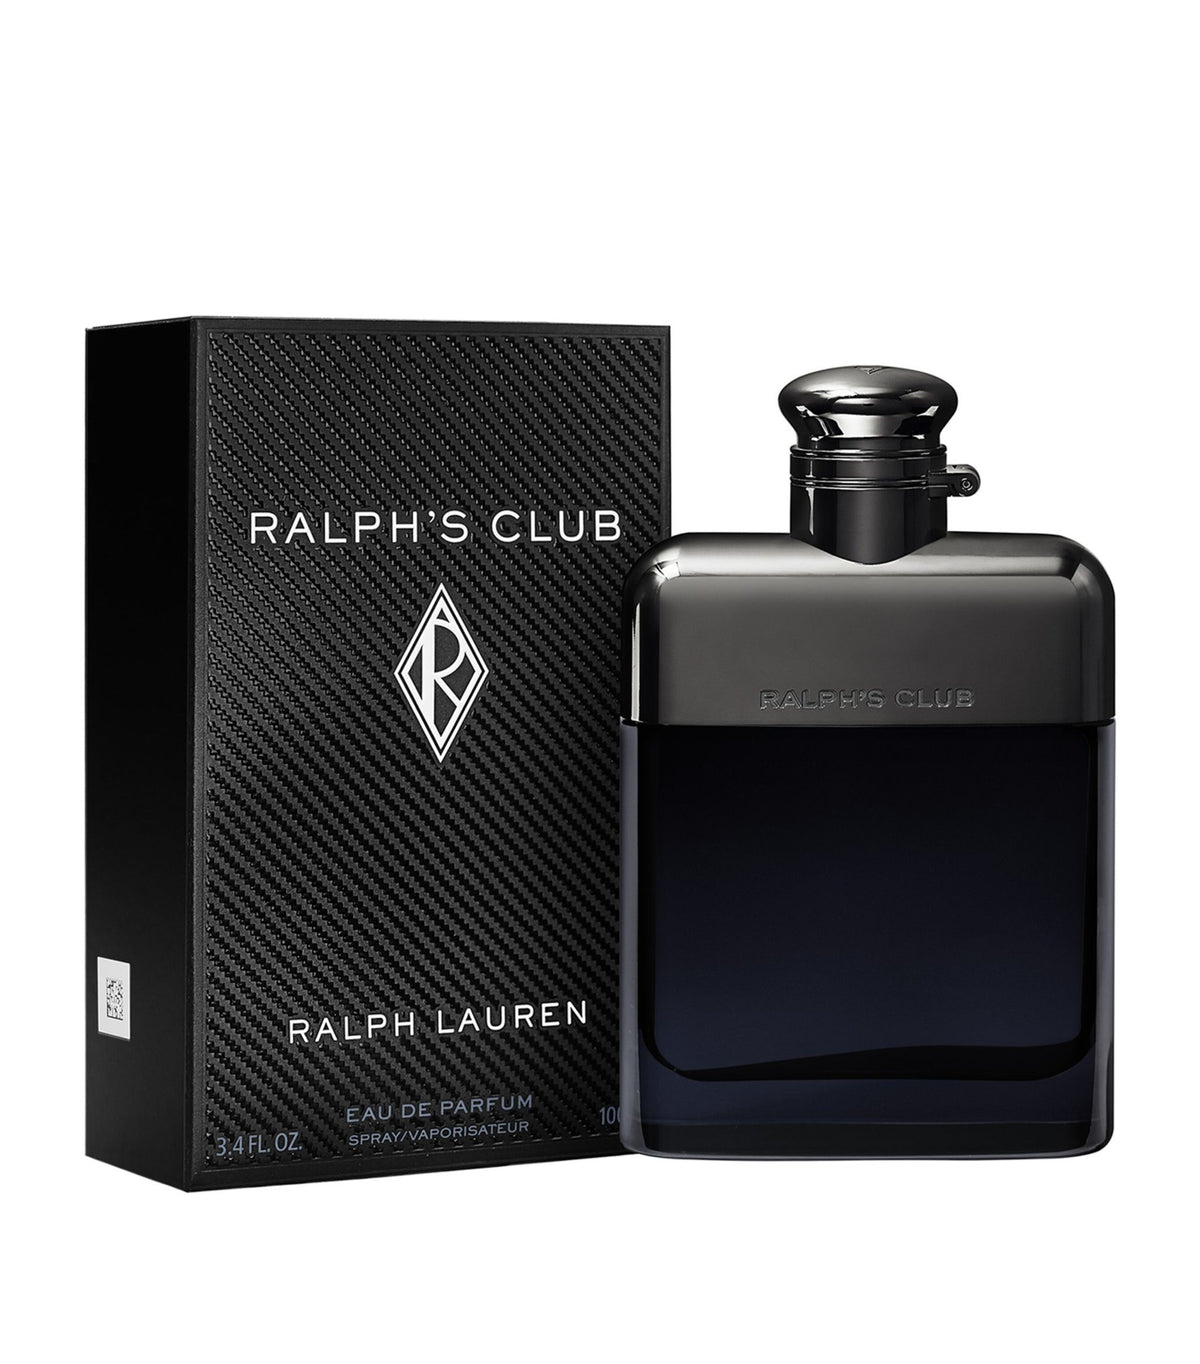 RALPH LAUREN Ralph's Club Eau De Parfum 100ml